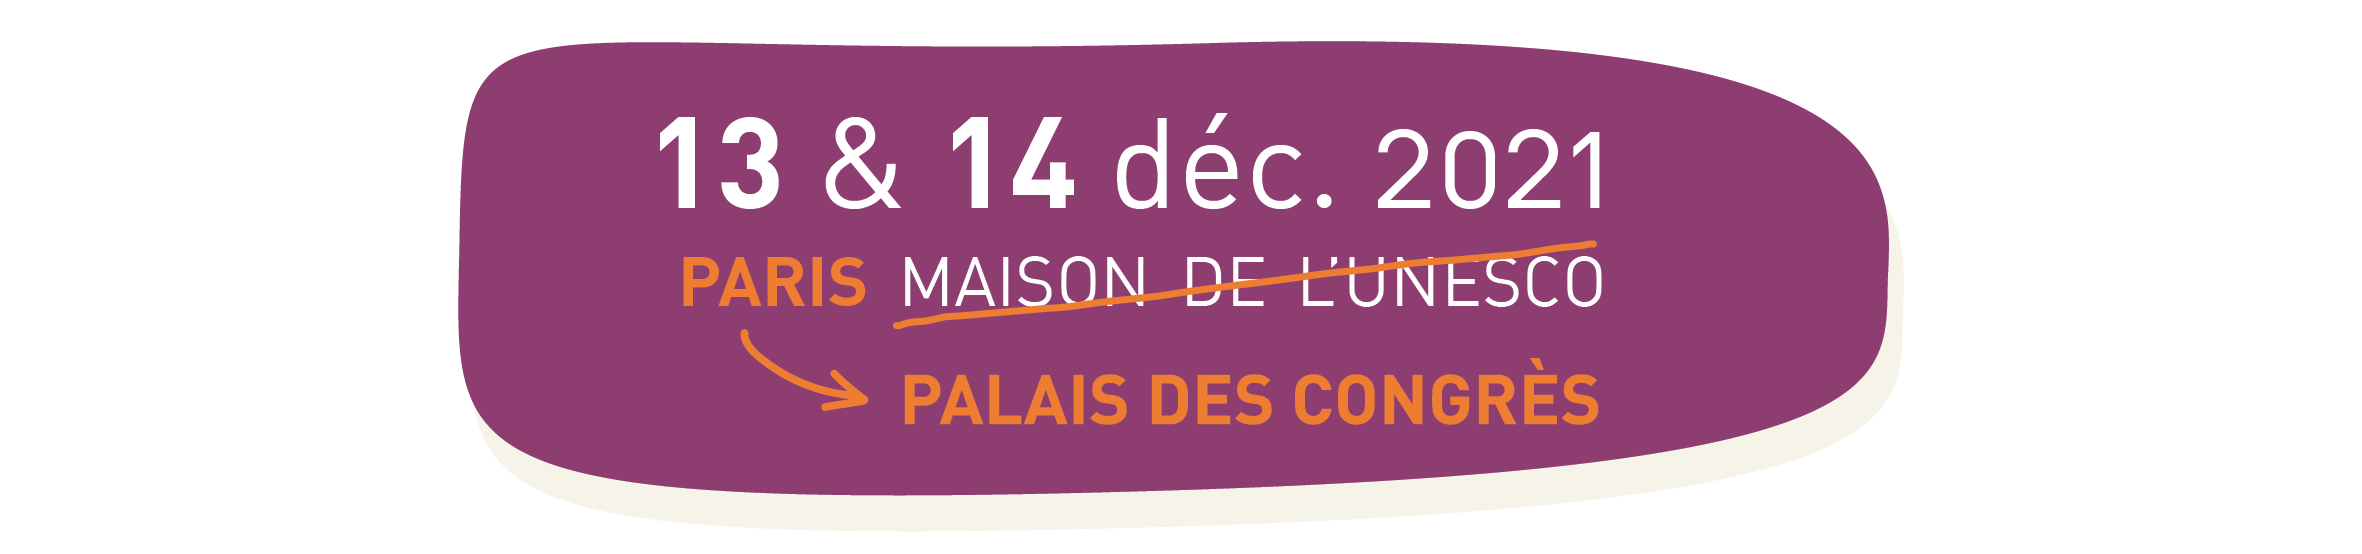 13 & 14 décembre 2021 - Palais des congrès  - Paris